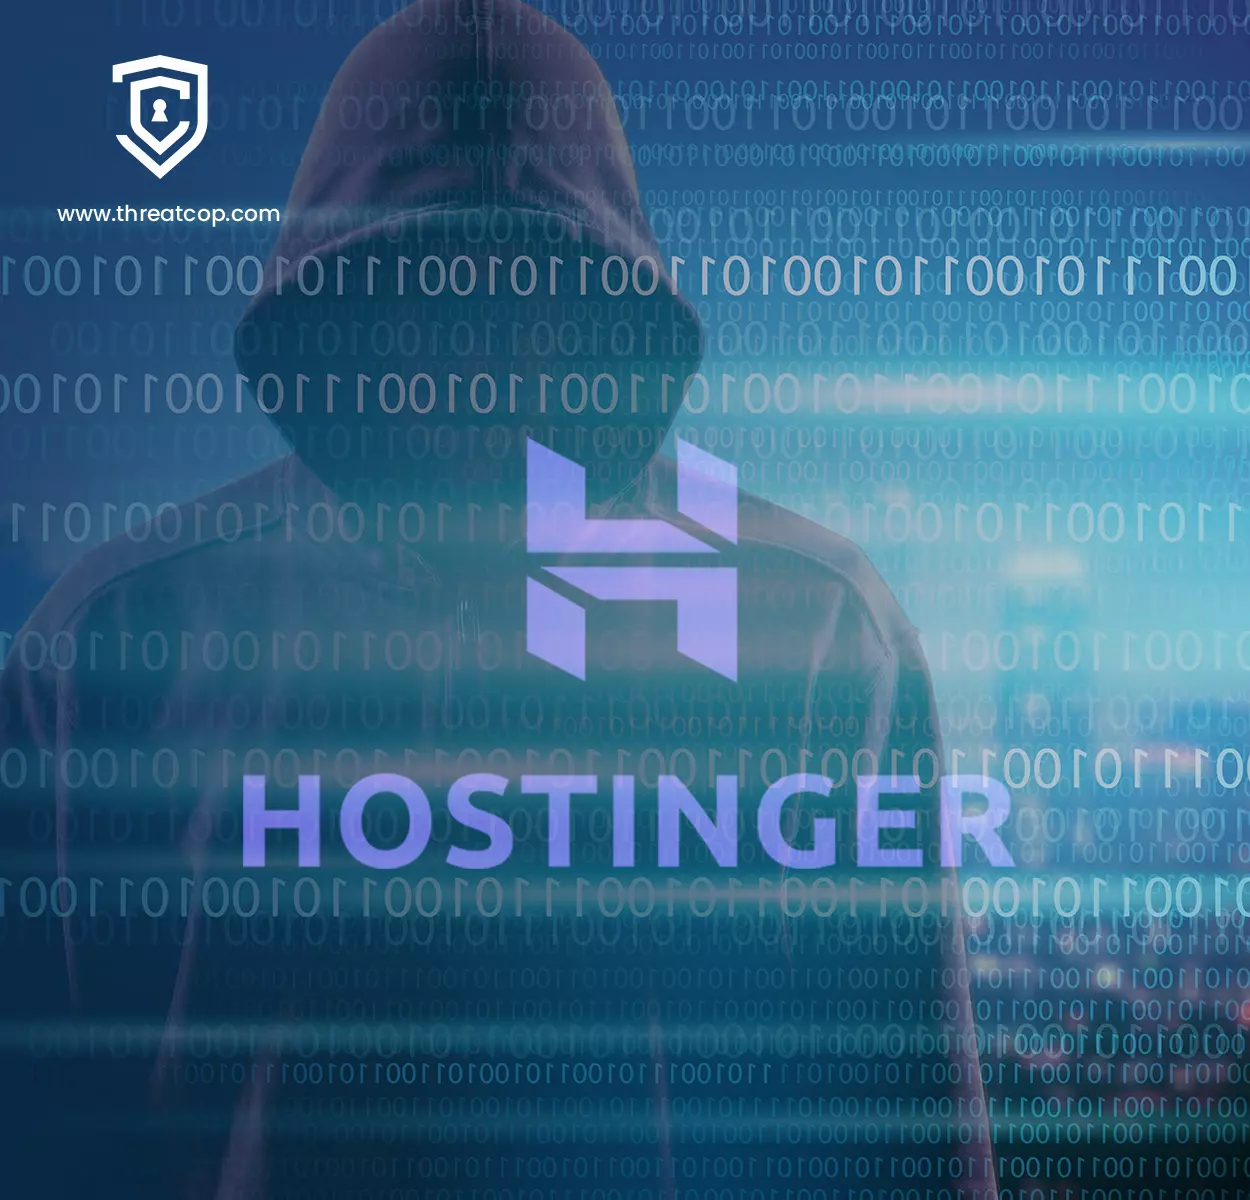 Hostinger | Figma Community